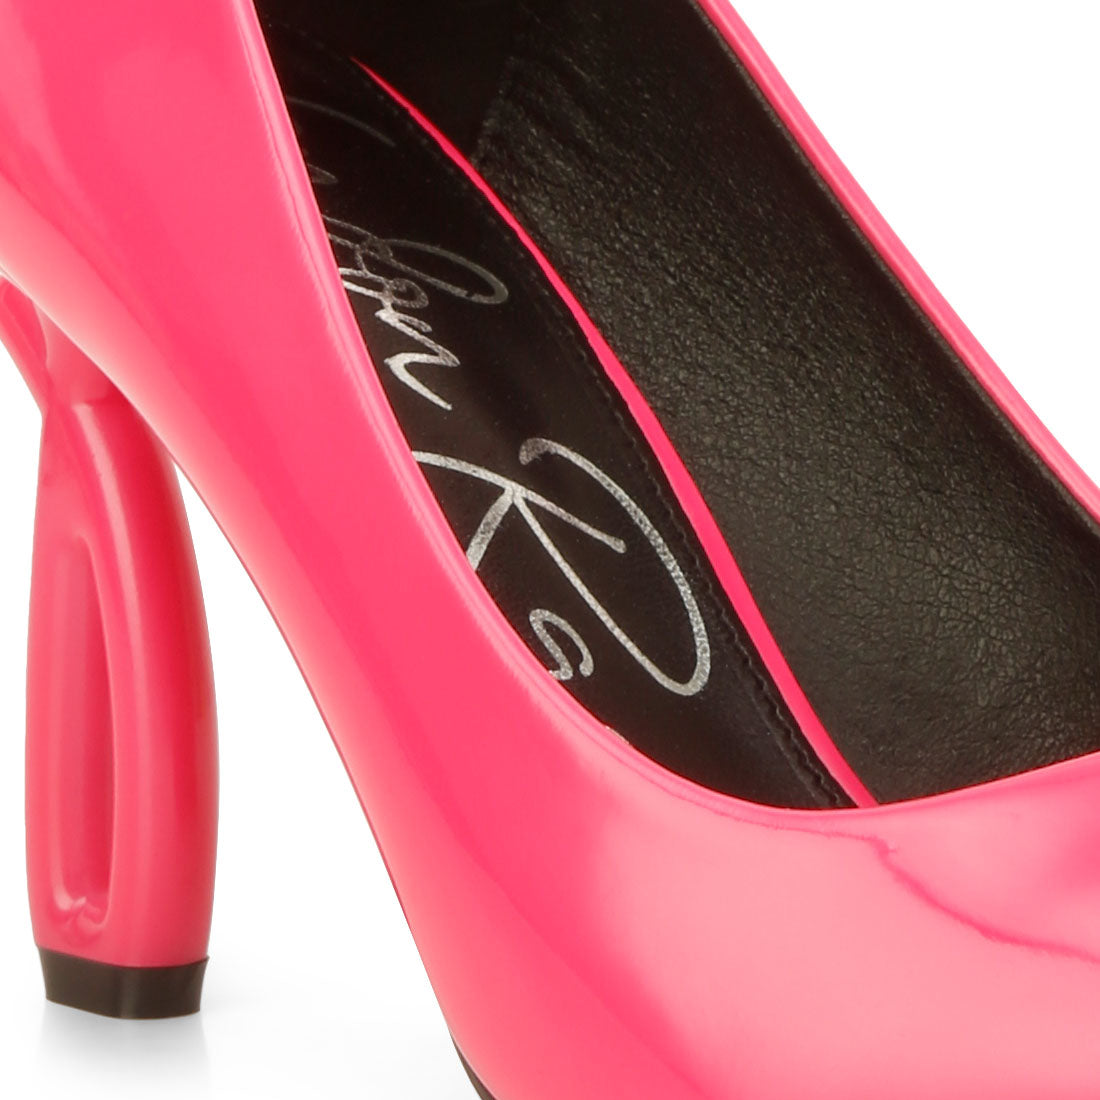 high fantasy heel pumps#color_pink